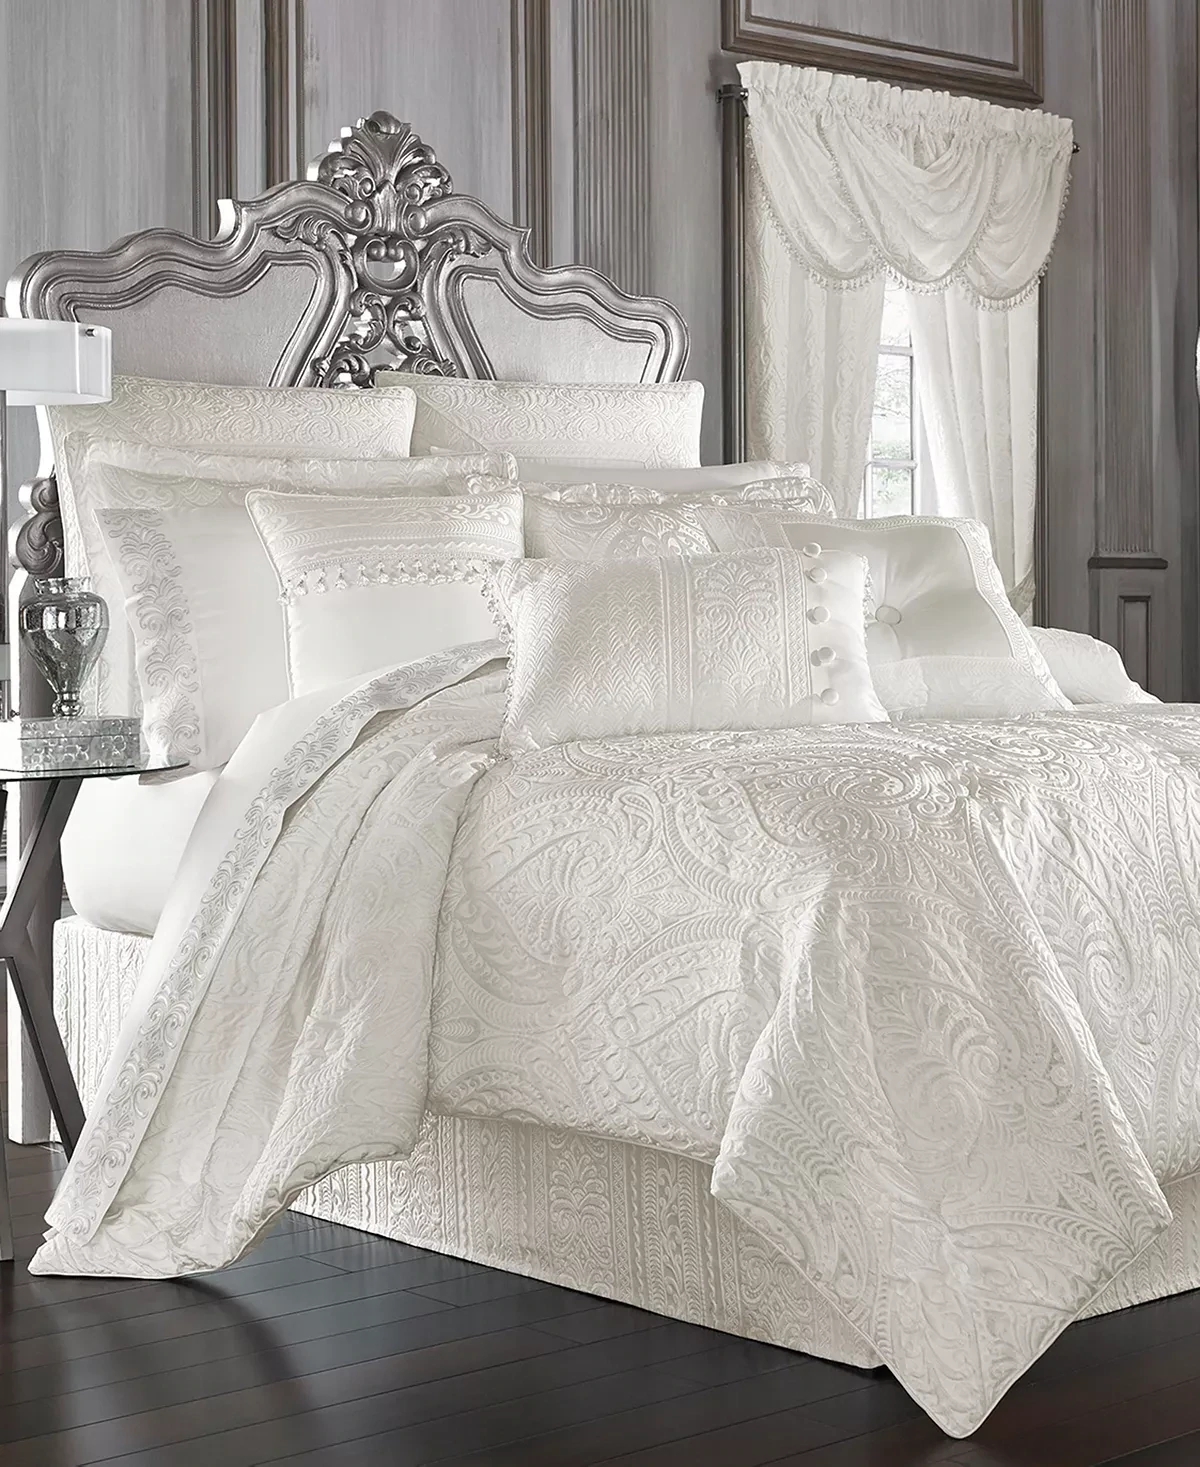 J Queen New York Bianco 4-Pc. Comforter Set, Queen - White